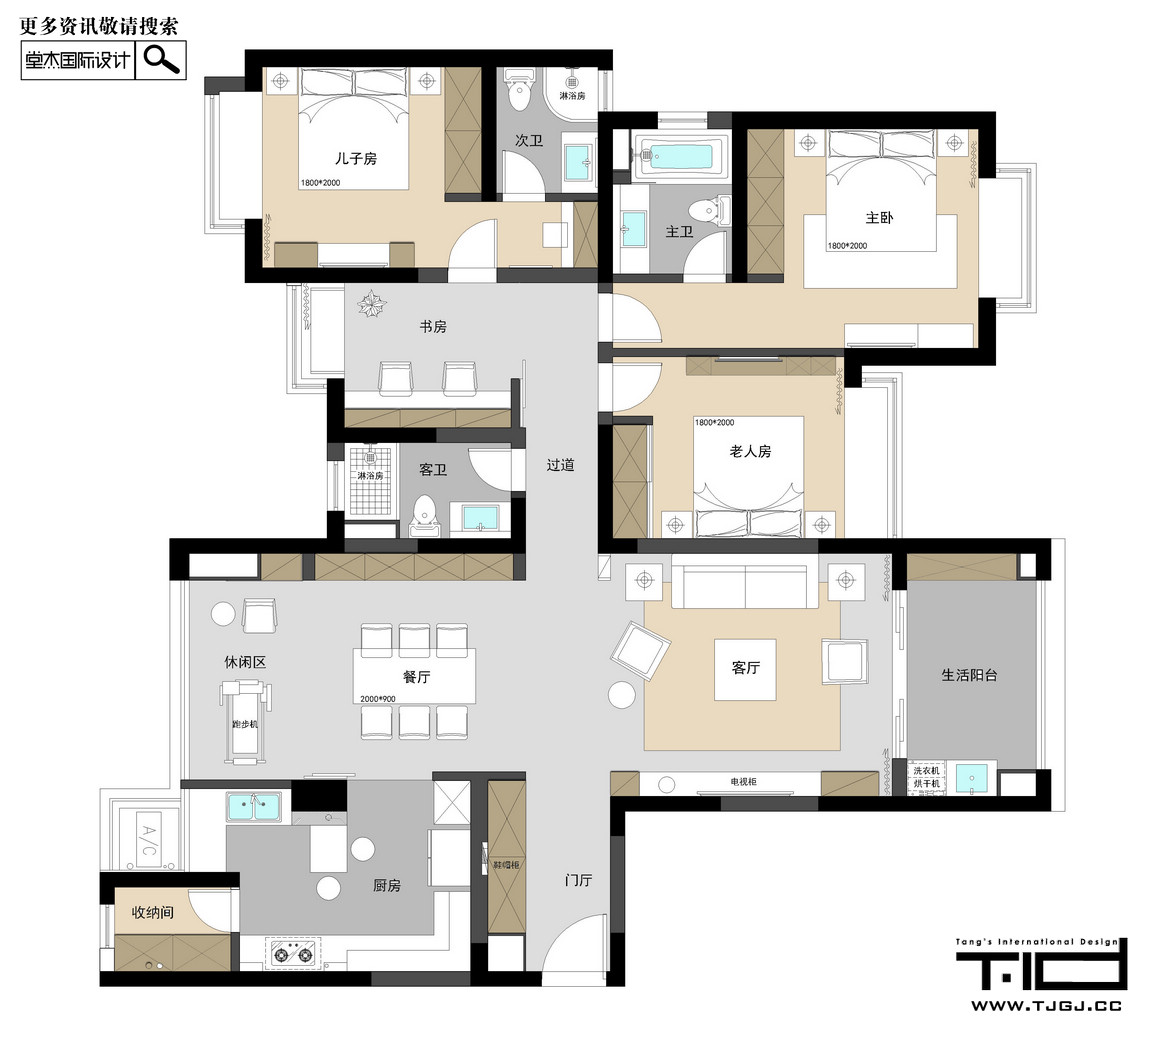 現代簡約-雅居樂濱江國際-四室兩廳-190平米裝修-四室兩廳-現代簡約